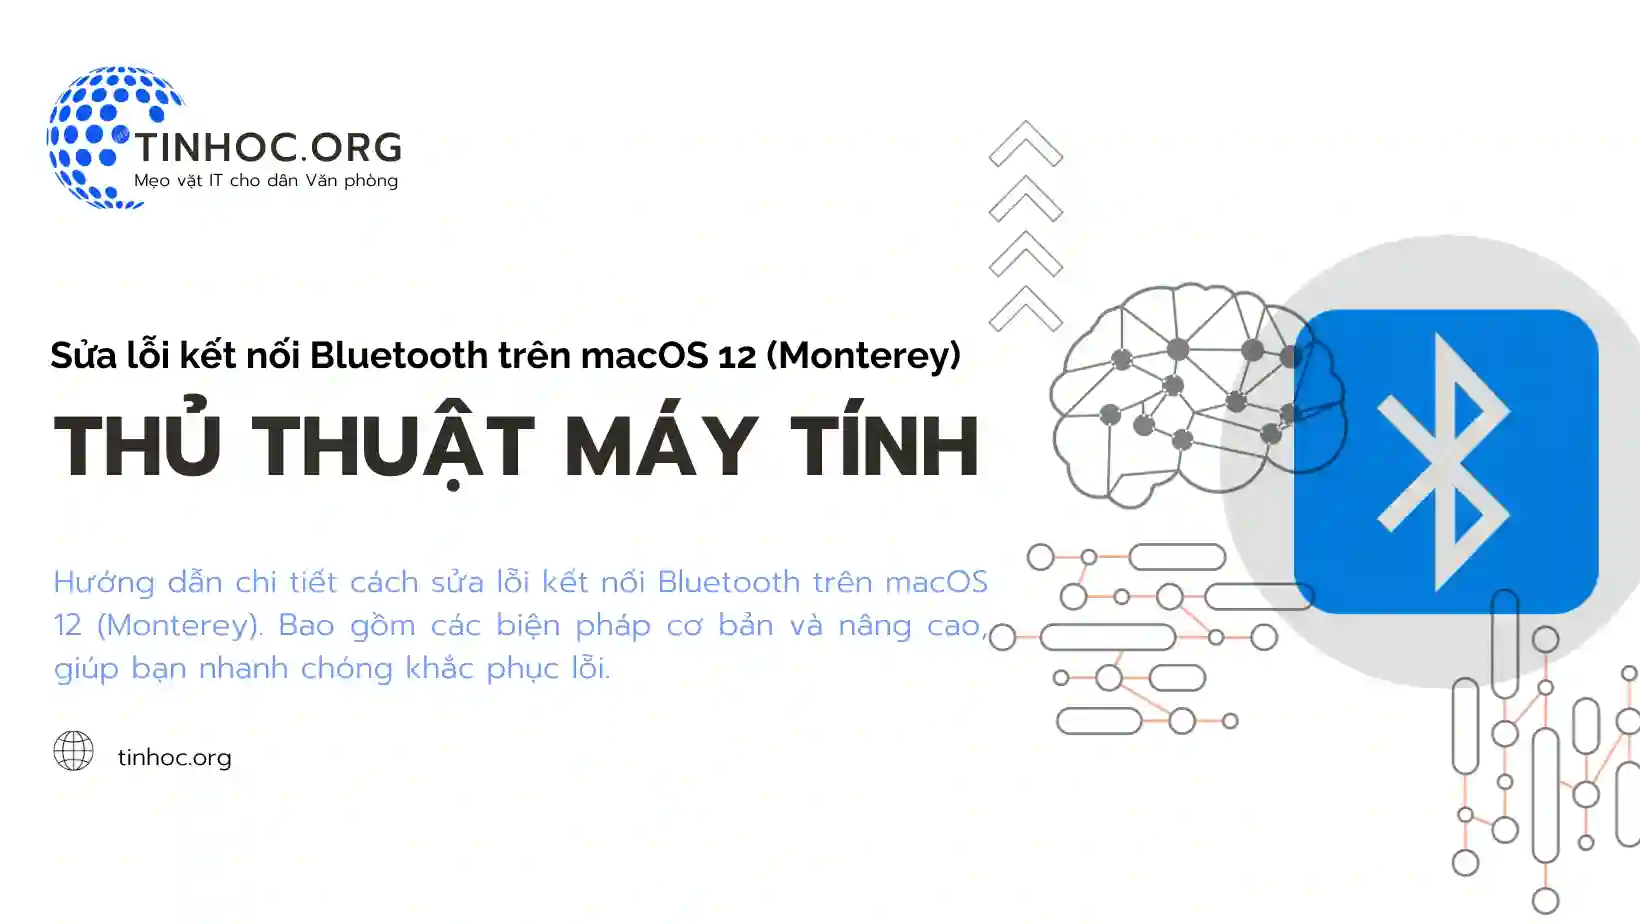 Hướng dẫn chi tiết cách sửa lỗi kết nối Bluetooth trên macOS 12 (Monterey). Bao gồm các biện pháp cơ bản và nâng cao, giúp bạn nhanh chóng khắc phục lỗi.